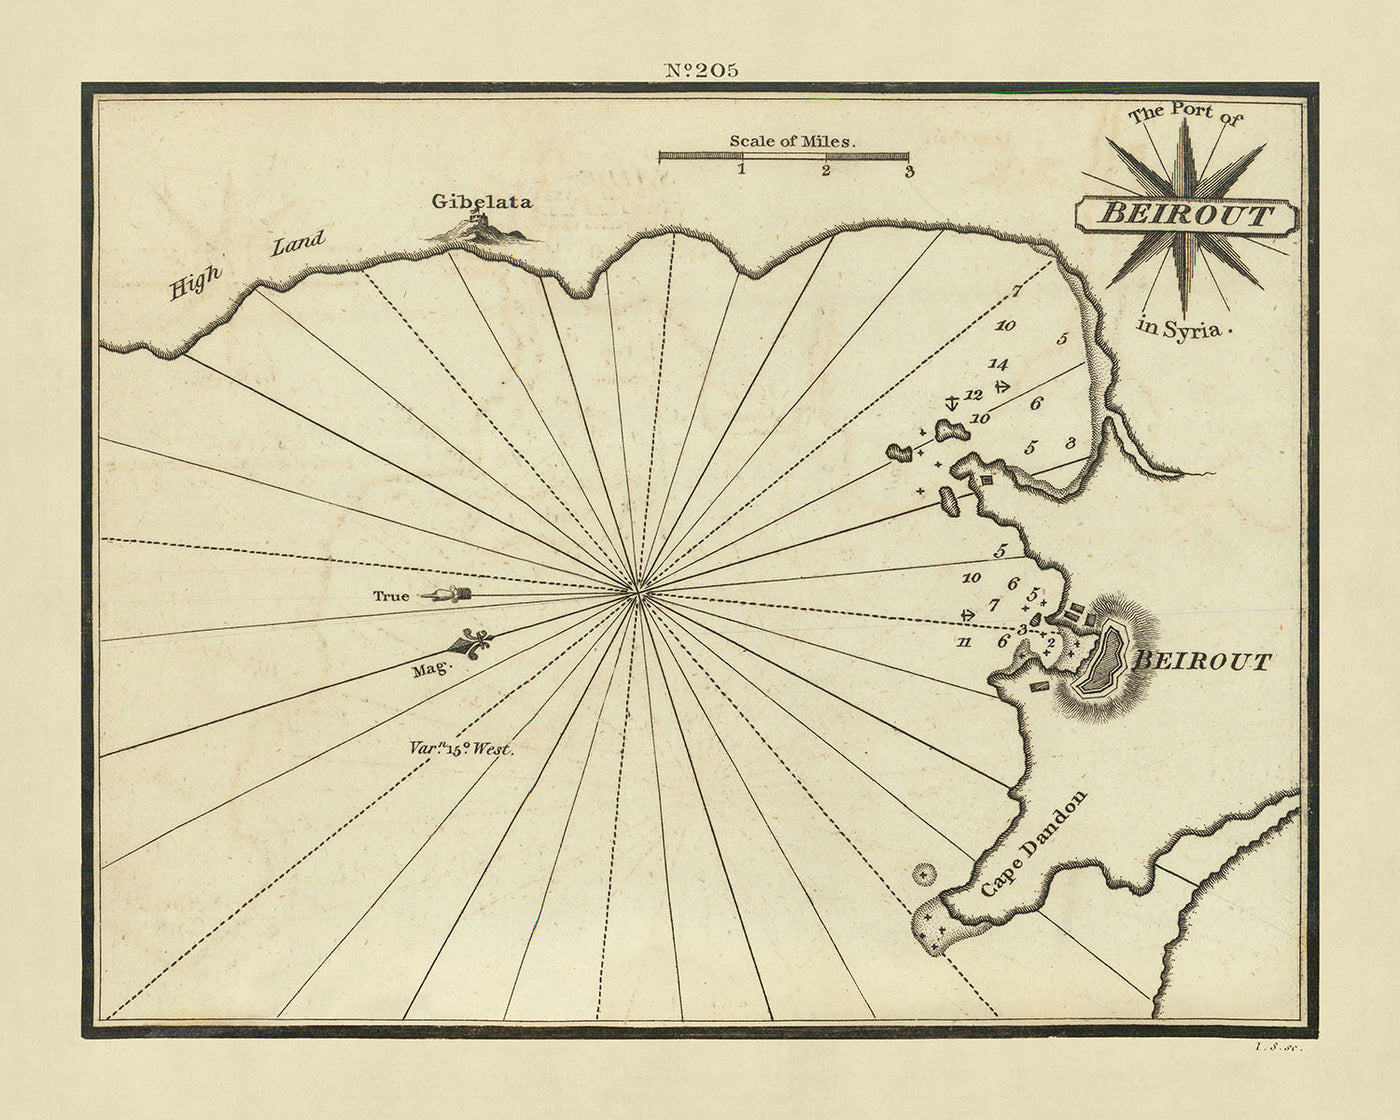 Carte nautique du vieux port de Beyrouth par Heather, 1802 : sondages détaillés, caractéristiques topographiques, mouillages